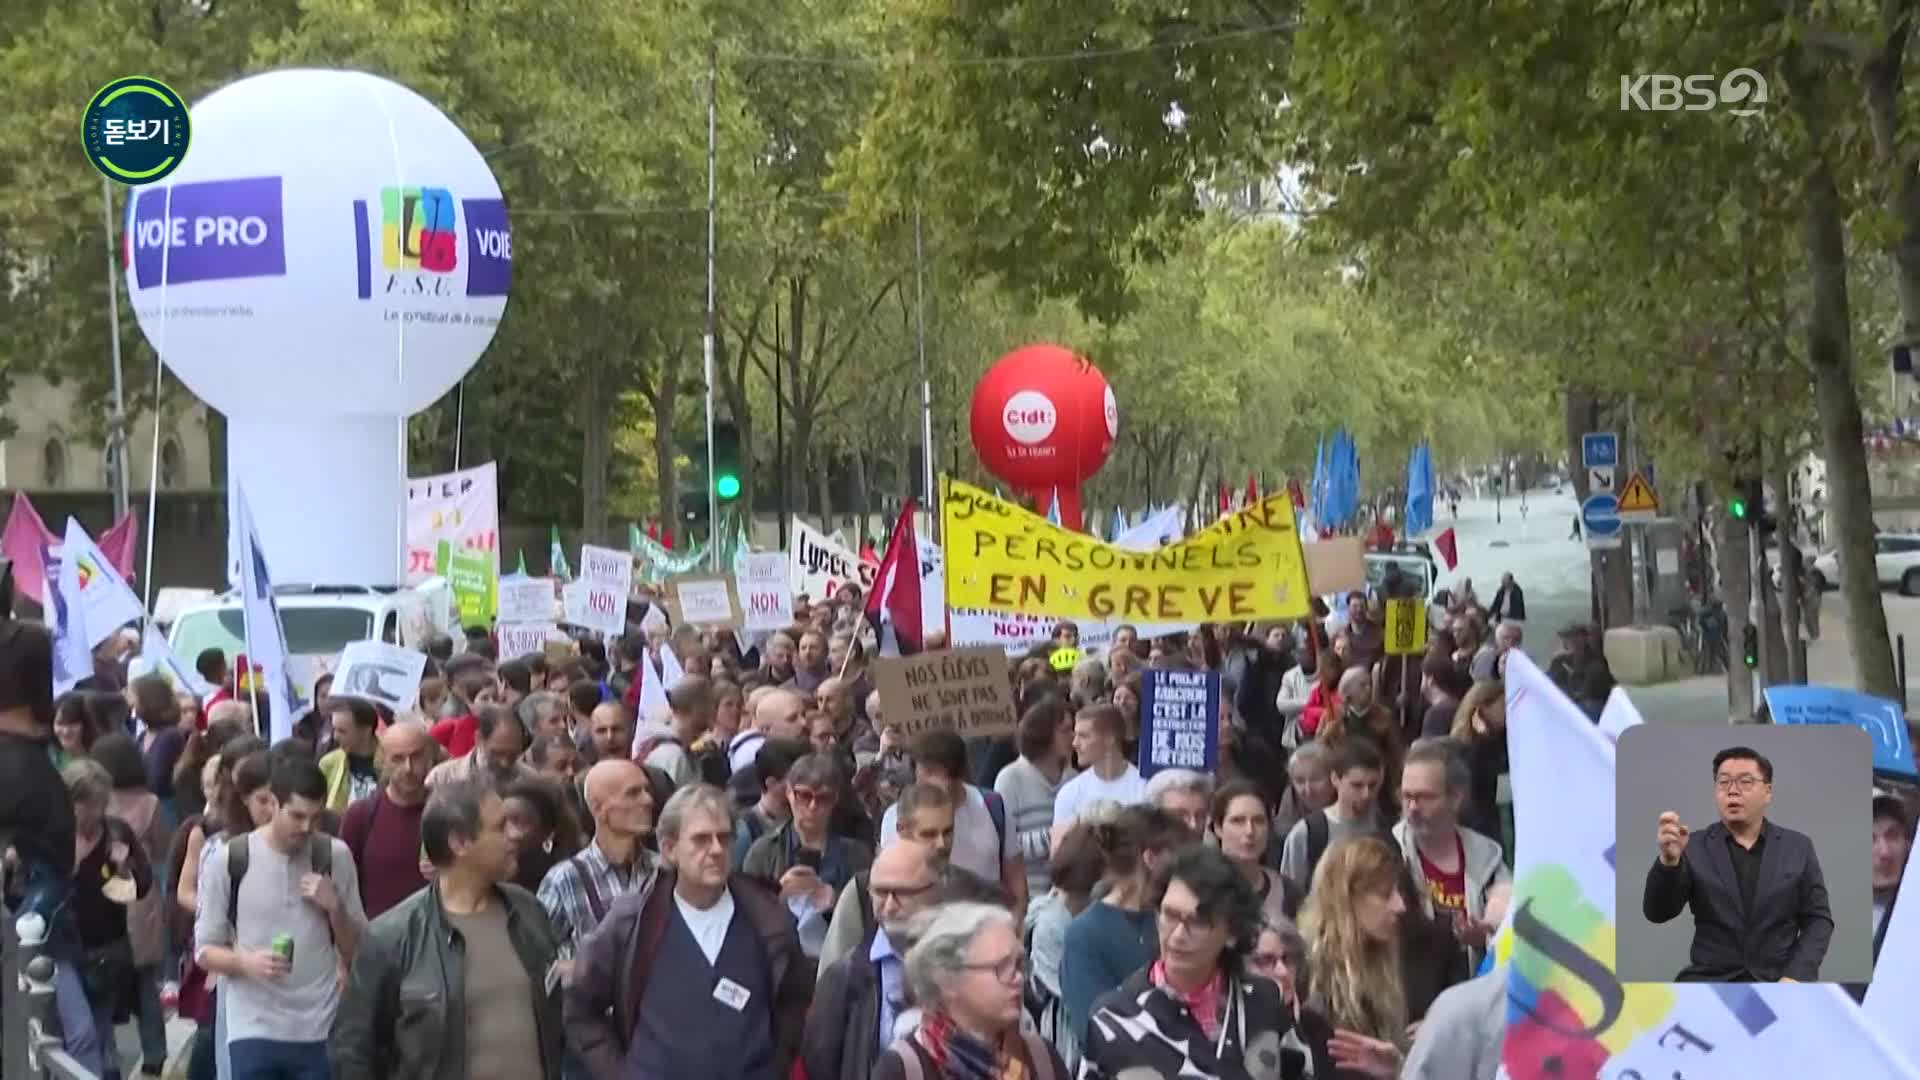 [지구촌 돋보기] “사람 말고 물가 잡아라” 유럽 시위 물결